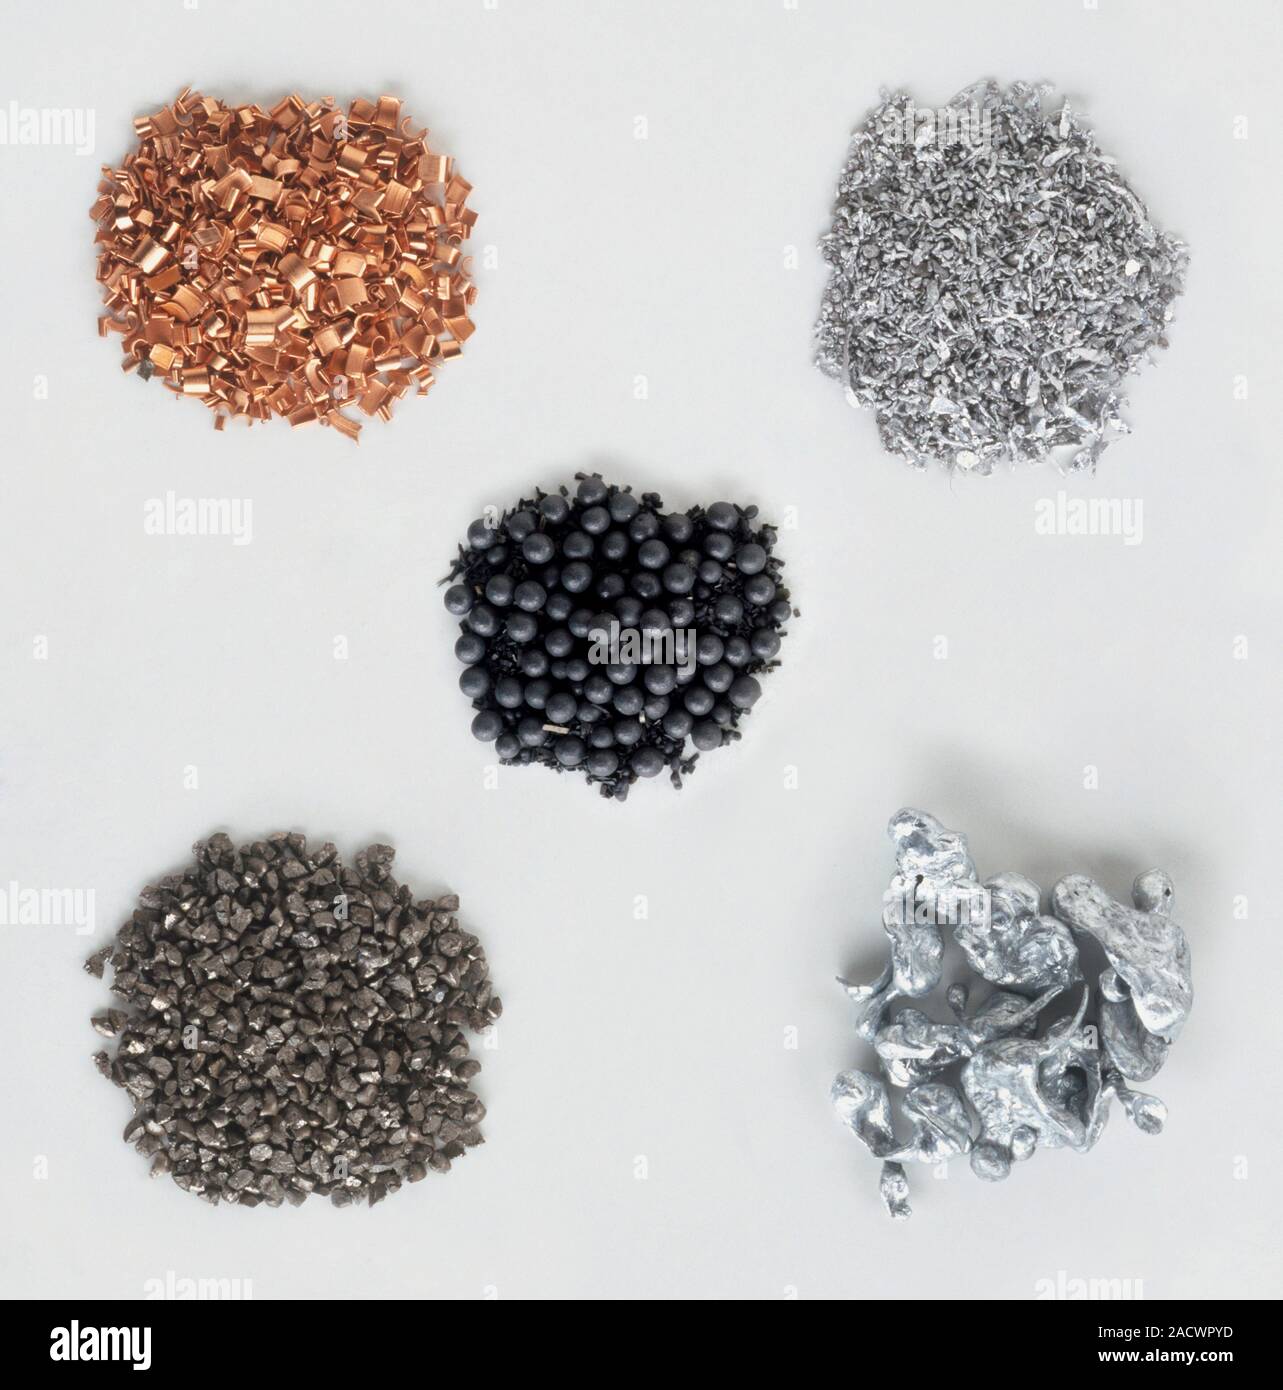 Rame, Alluminio, zinco, ferro e piombo Foto stock - Alamy